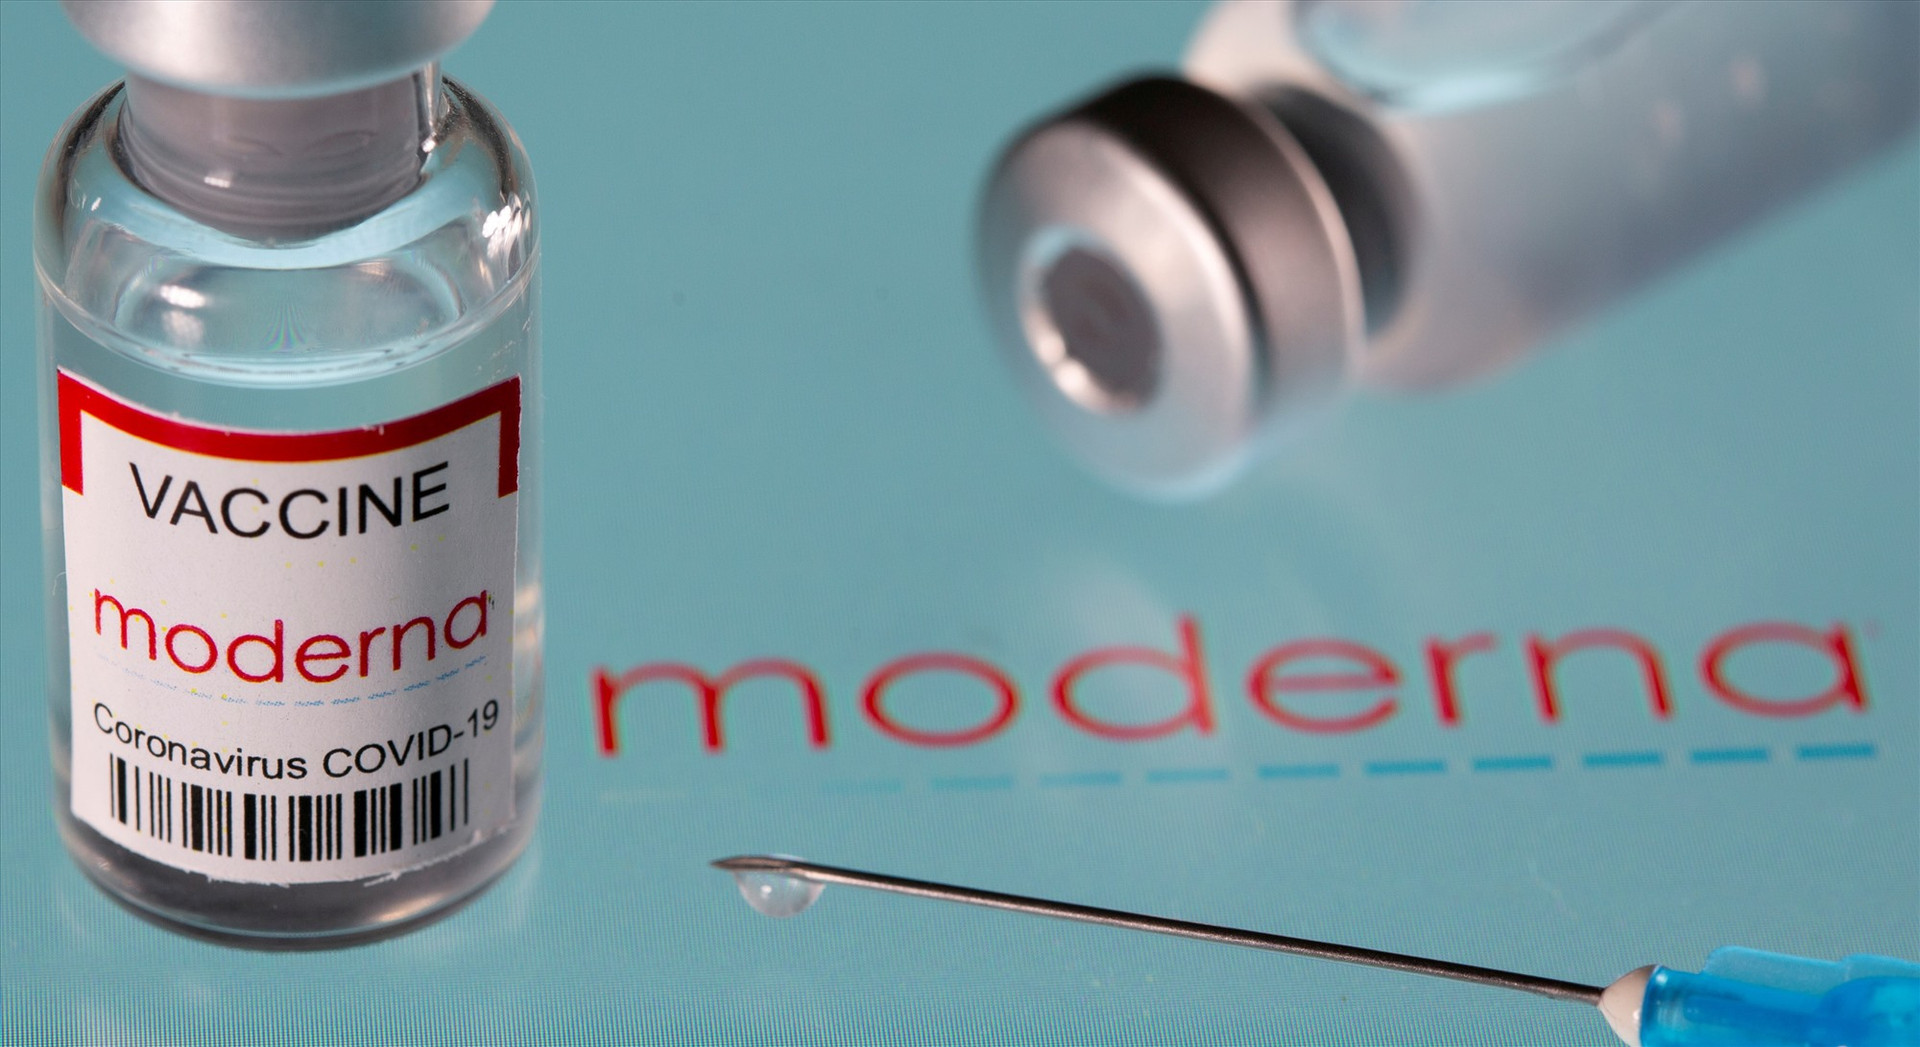 Vaccine ngừa COVID-19 của hãng Moderna được đánh giá có hiệu quả 94,1%